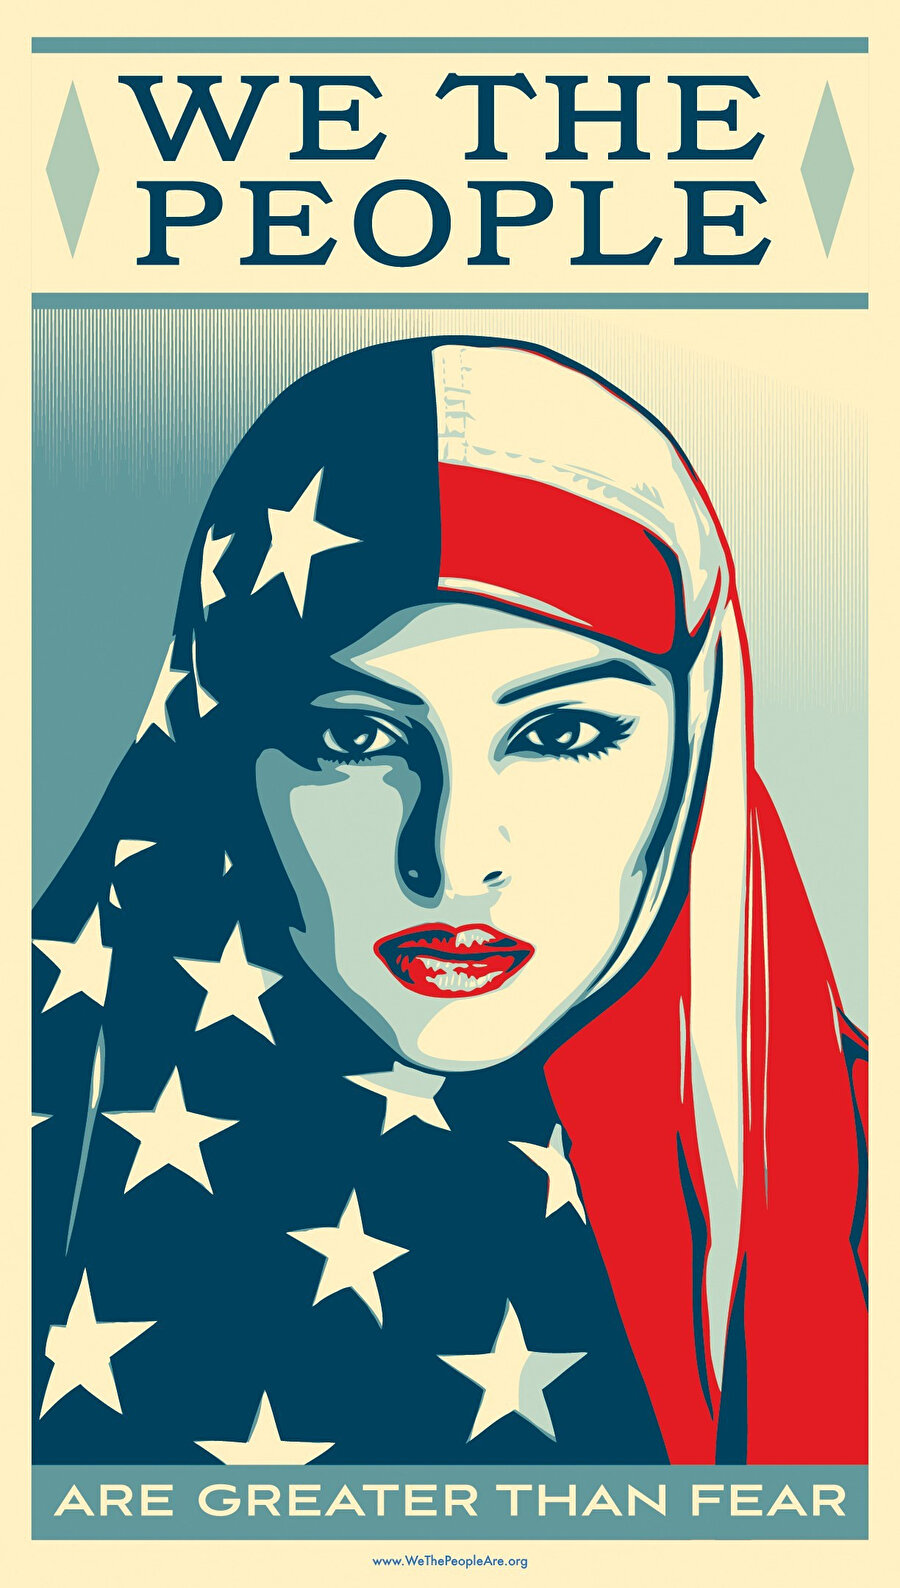 2007 yılında Amerika’da 2,35 milyon Müslüman bulunmakta. Bu da Amerikan nüfusunun yüzde 0,8’ine tekabül ediyor.